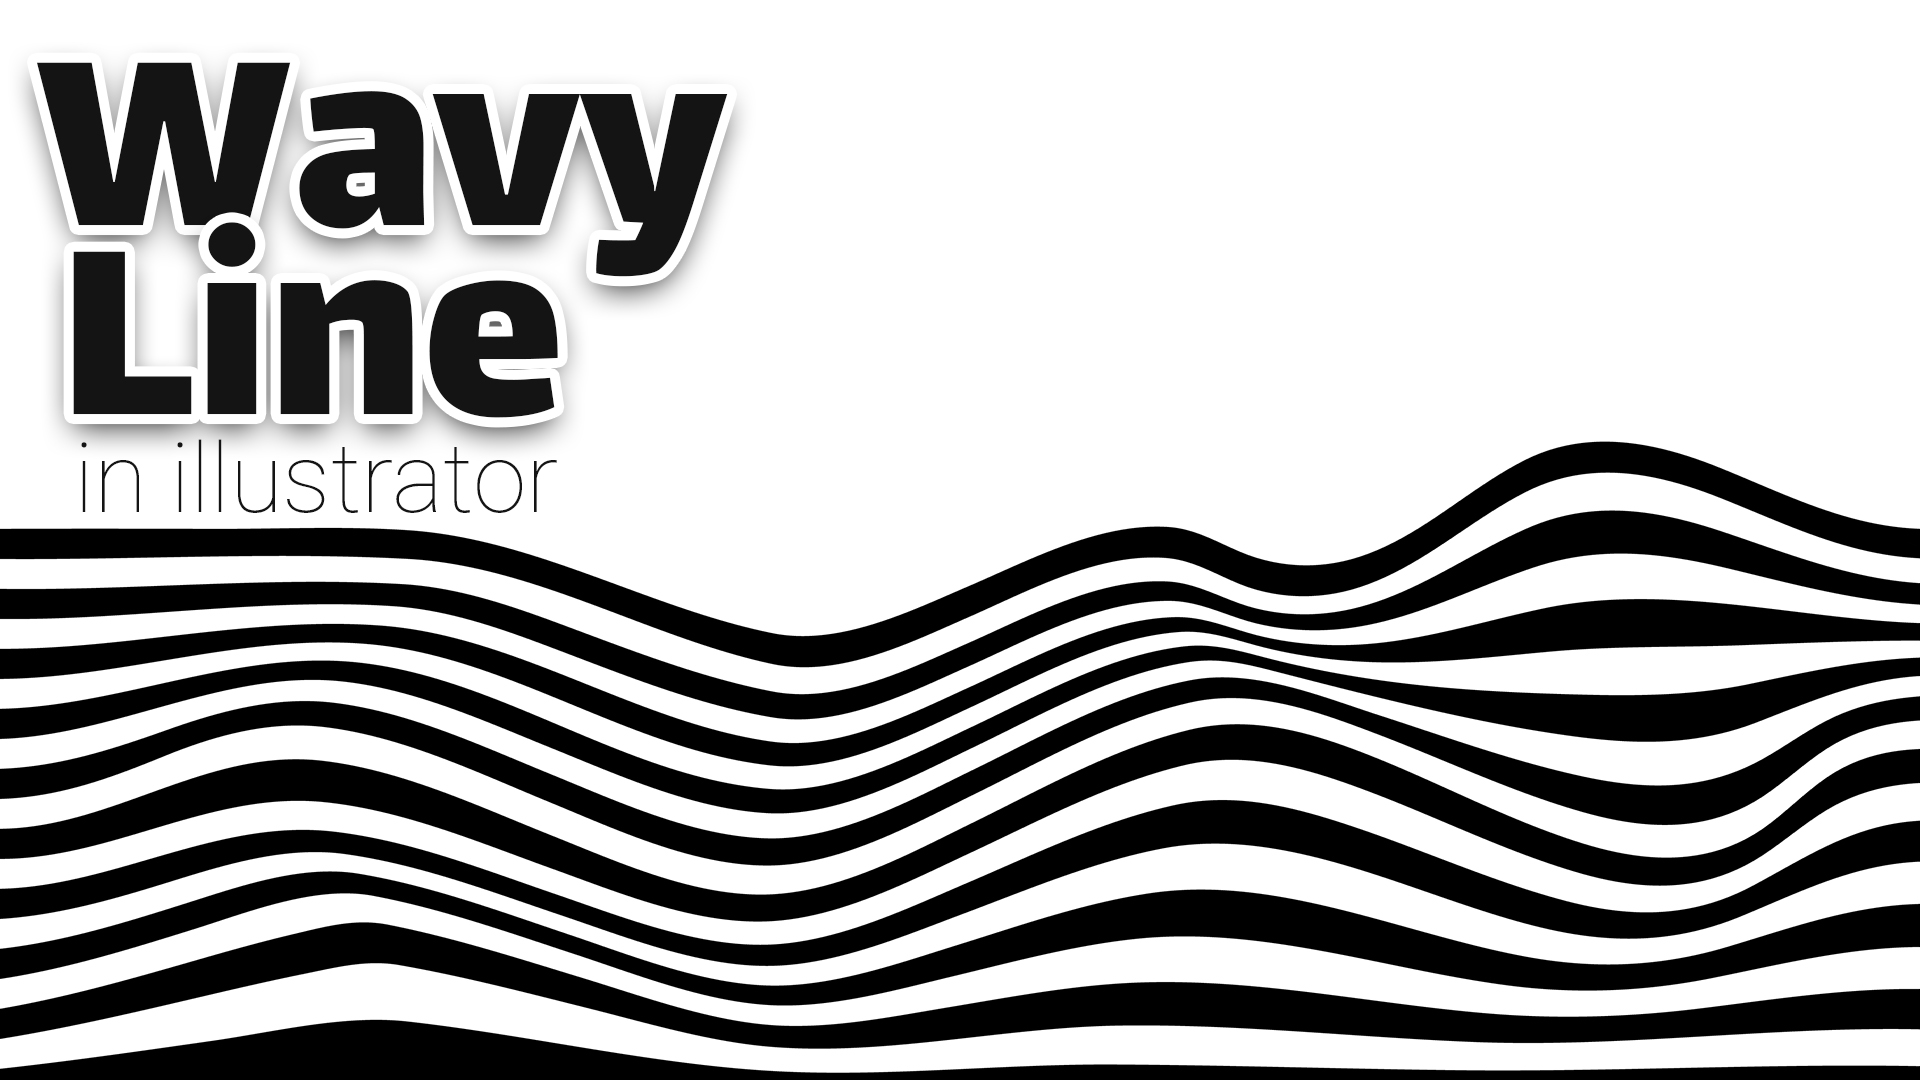 Wave Line in Adobe Illustrator